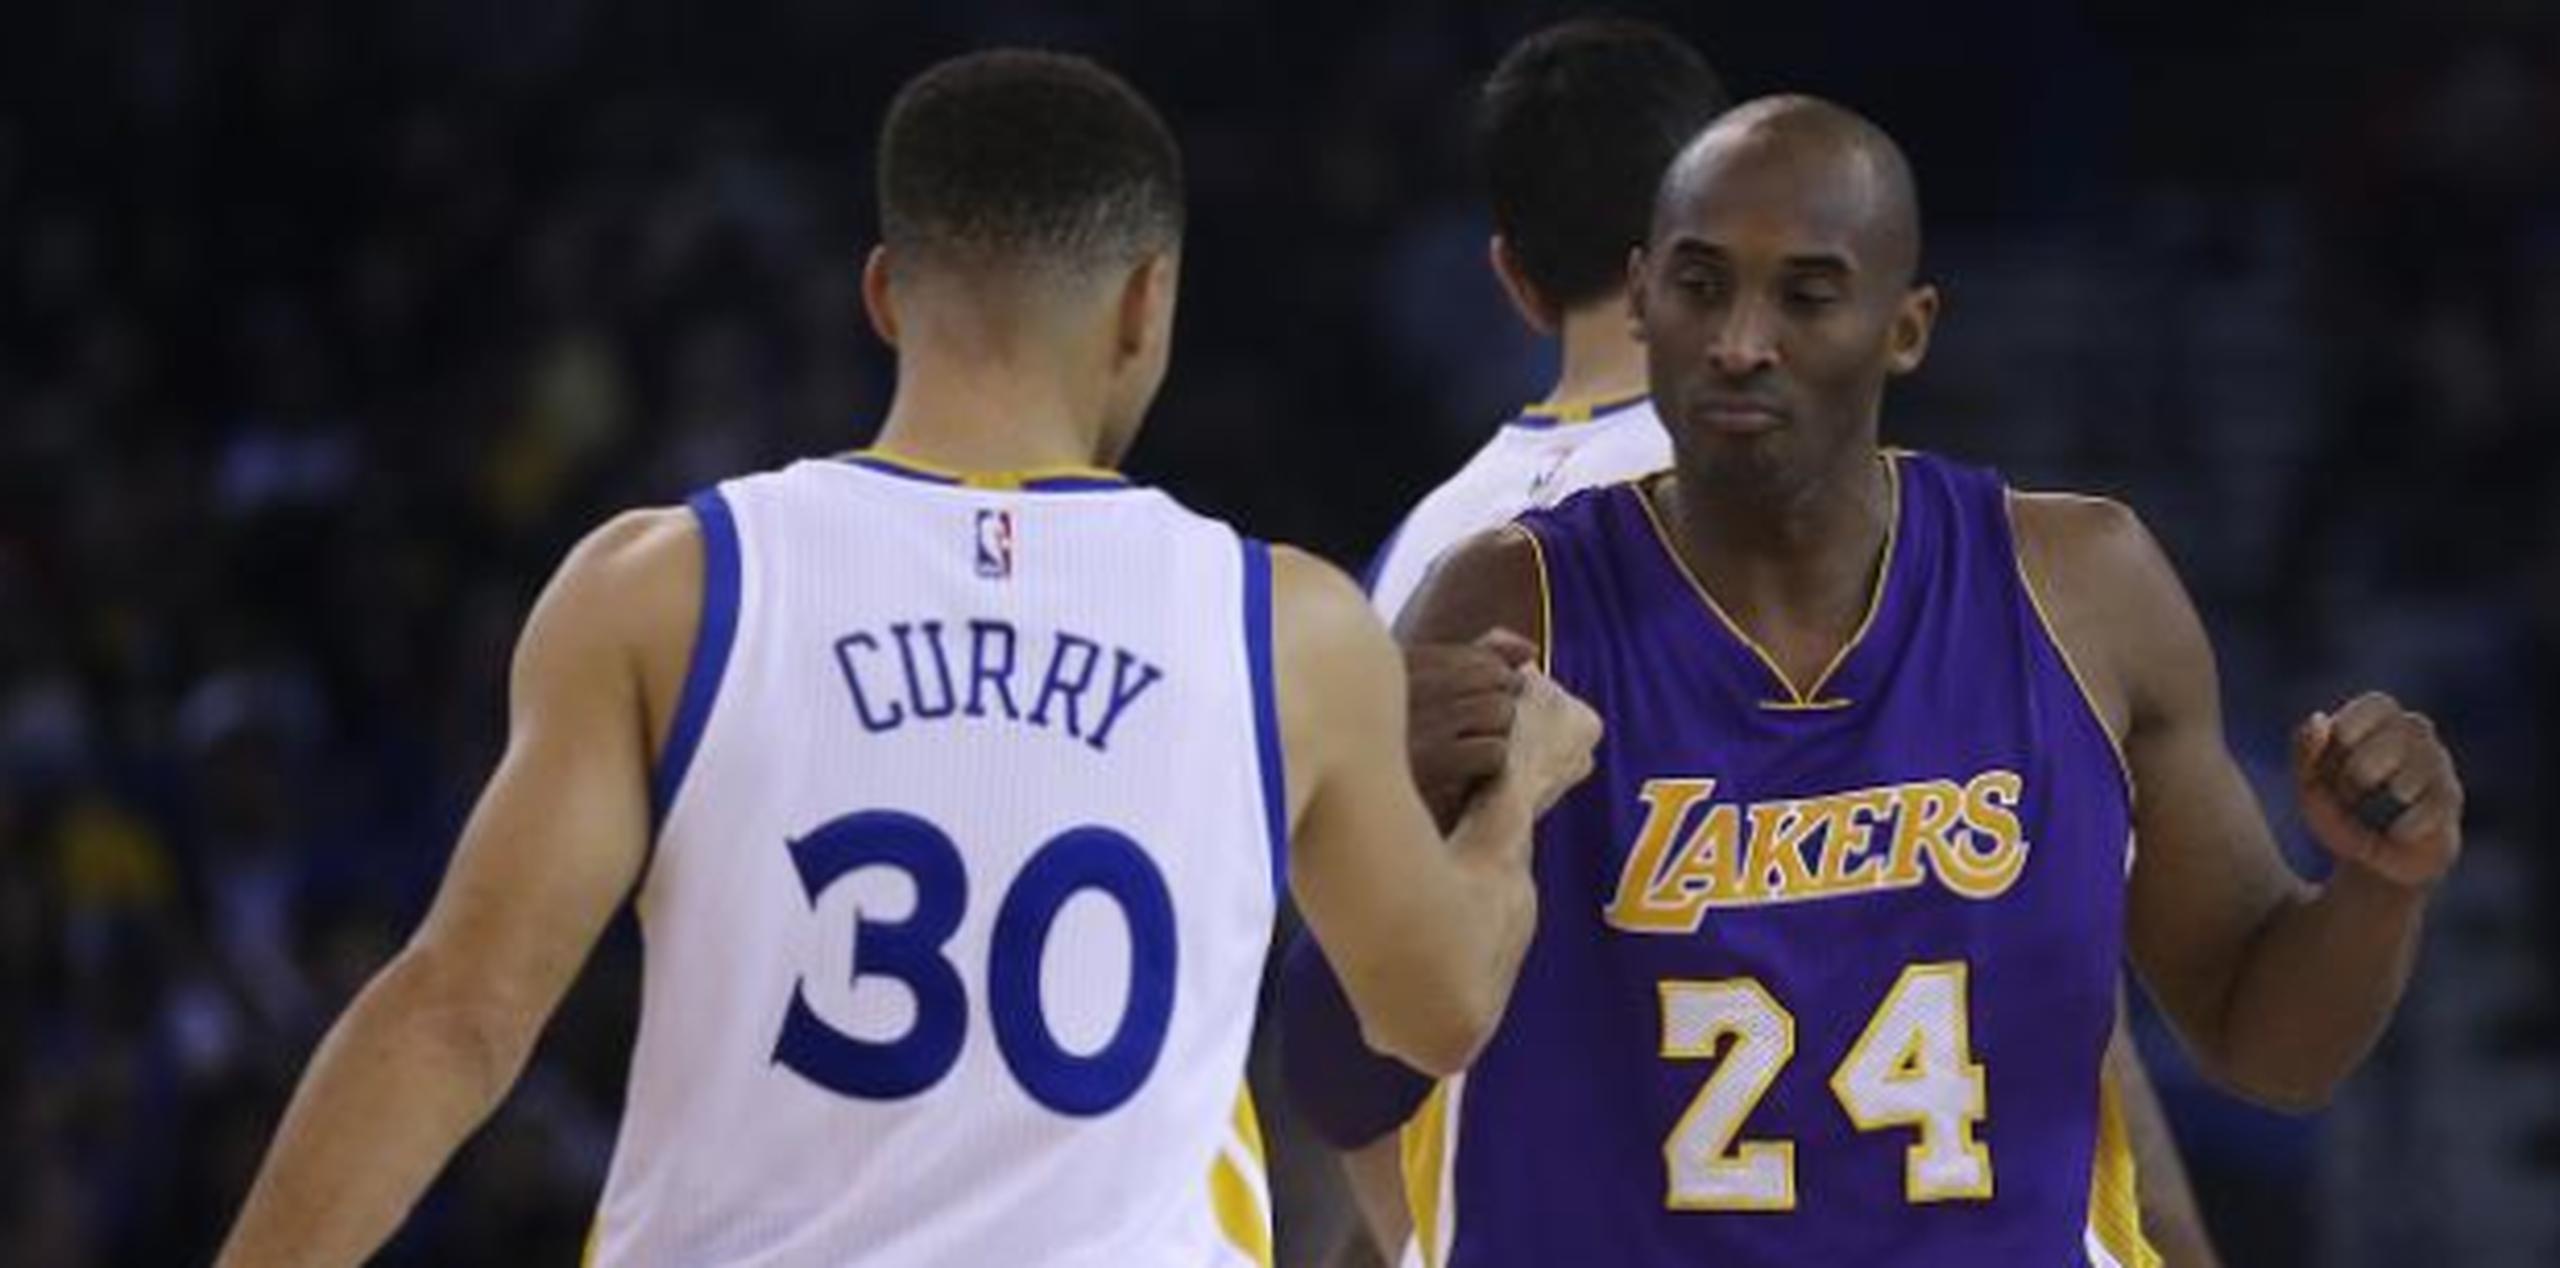 Stephen Curry y Kobe Bryant son protagonistas esta noche -y en juegos separados- del fin de una era. (Archivo)